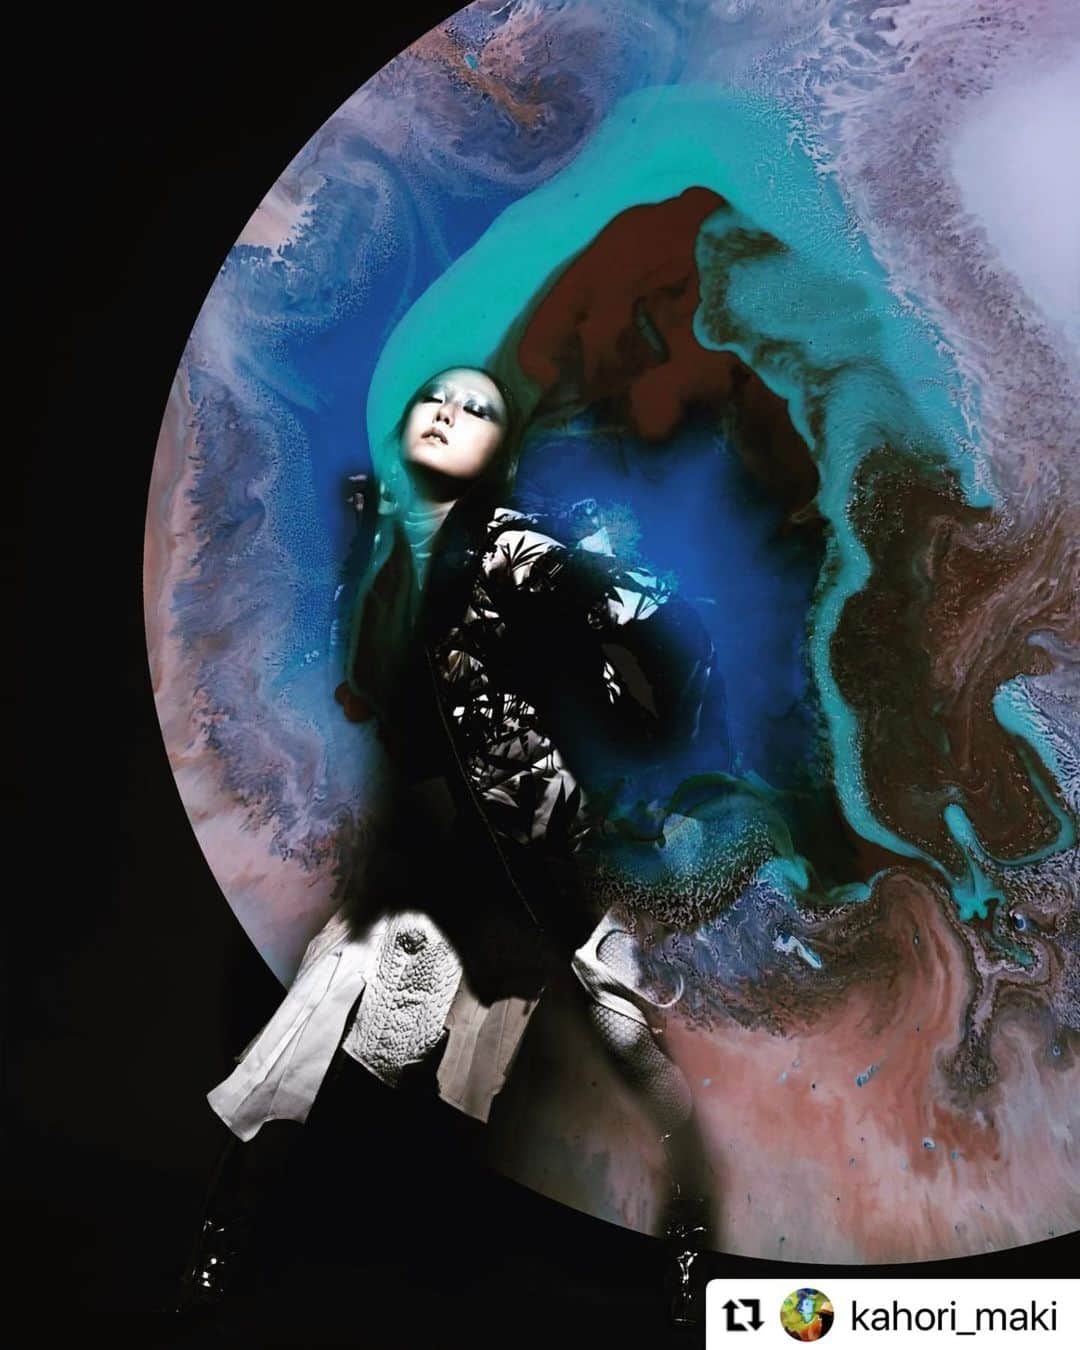 Descenteのインスタグラム：「20FW women’s collection collaborated with graphic designer  Kahori Maki. Given the artistic touch from the creators surrounding her, DESCENTE earns another unique shine.  #Repost @kahori_maki ・・・ A Happy New Year!  月に還ってゆく姫　地に舞い降りた姫 月はみずみずしく輝き、 地は熱く燃えています。  火と水、世の中の相反する事象が、私たちの心の中ではどうか静かに溶け合いますように。2021年もどうぞよろしくお願いします。  牧かほり ————- DESCENTE SKI collection 2020をベースに友人の天才爆弾スタイリスト 飯島久美子と企てたシリーズ。写真家 宮原夢画、モデル/ダンサー Chikako Takemoto、メーク 栢木進、ヘア 滝田淳詩の夢チームで作った「竹取物語」 出会い、別れの2シーンが描かれたジャケットから仮想現実の世界へワープさせ、グラフィカルな創作が実現しました。  photographer Muga Miyahara stylist Kumiko Iijima model Chikako Takemoto  make-up Susumu Kayaki hair Atsushi Takita casting Oi-chan  special thanks Shiho Minami    #skiwear #moon #竹取物語 #winterfashion #fashion #fantasy #creative」